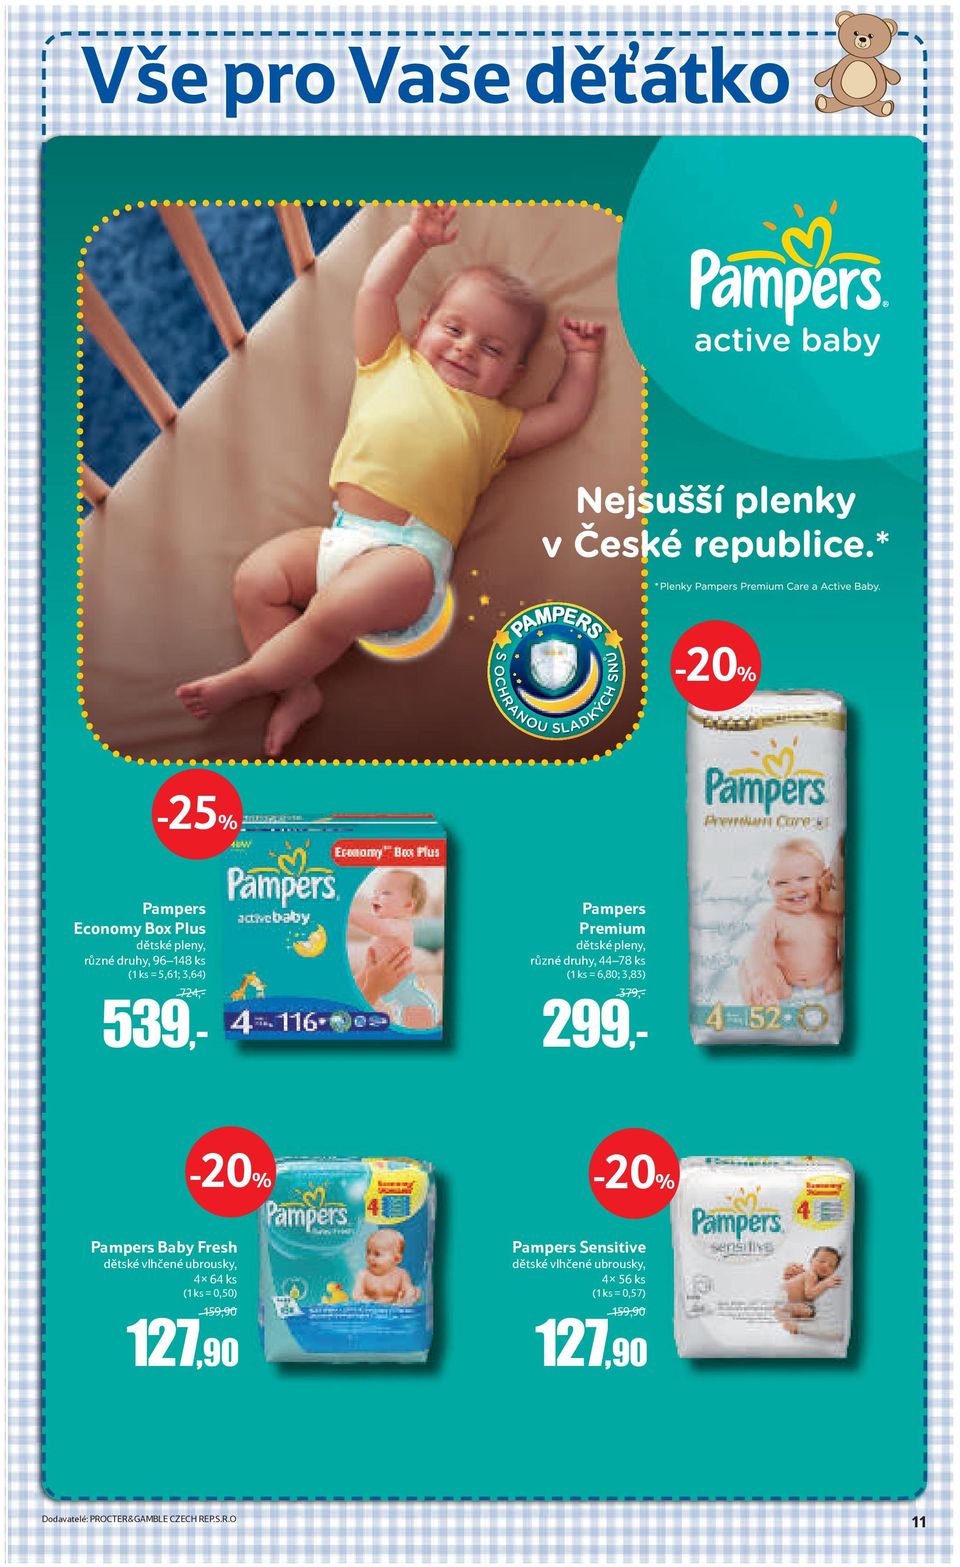 Pampers Baby Fresh dětské vlhčené ubrousky, 4x 64 ks (1 ks = 0,50) 159,90 127,90 Pampers Sensitive